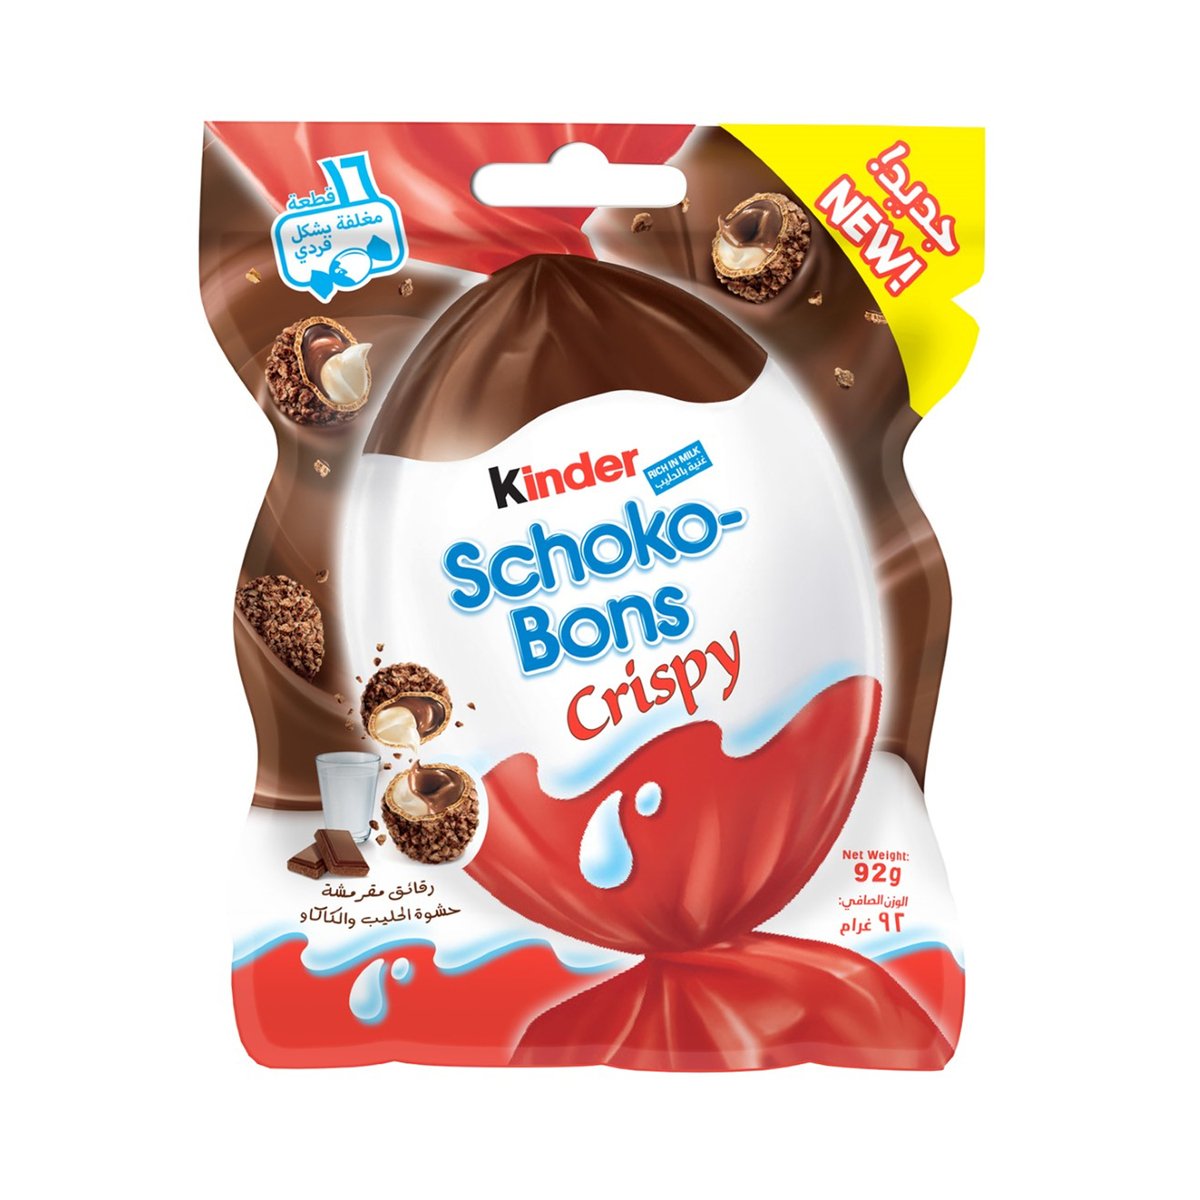 Ferrero Kinder Schoko Bons Crispy Chocolate 89g Online at Best Price, Kids  Chocolate, Lulu UAE price in UAE, LuLu UAE